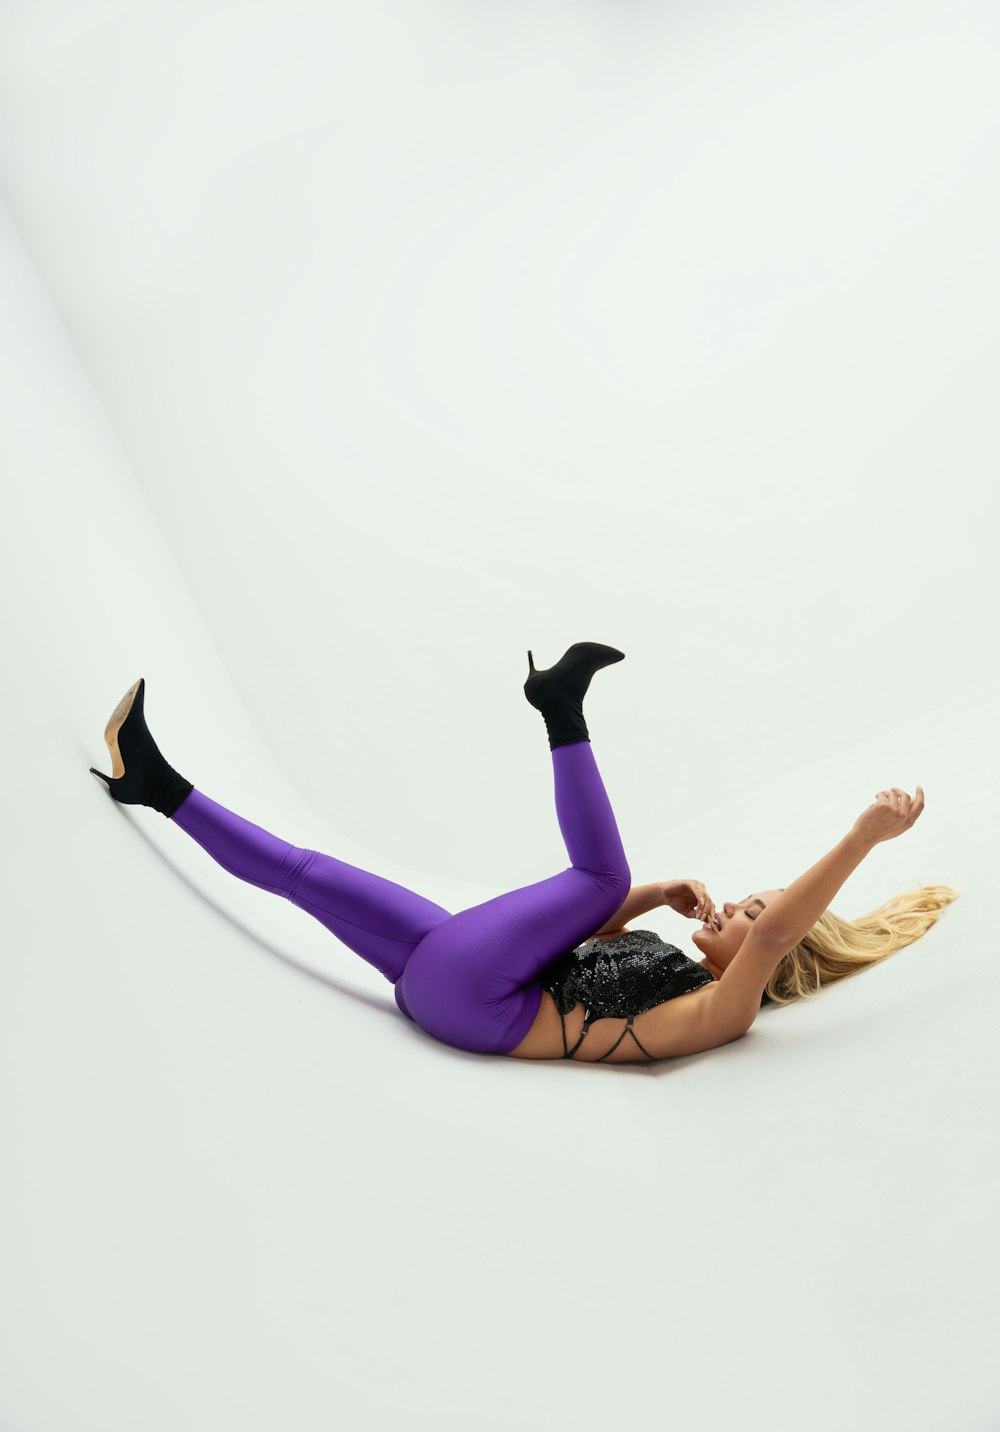 une femme allongée sur le sol, les jambes écartées